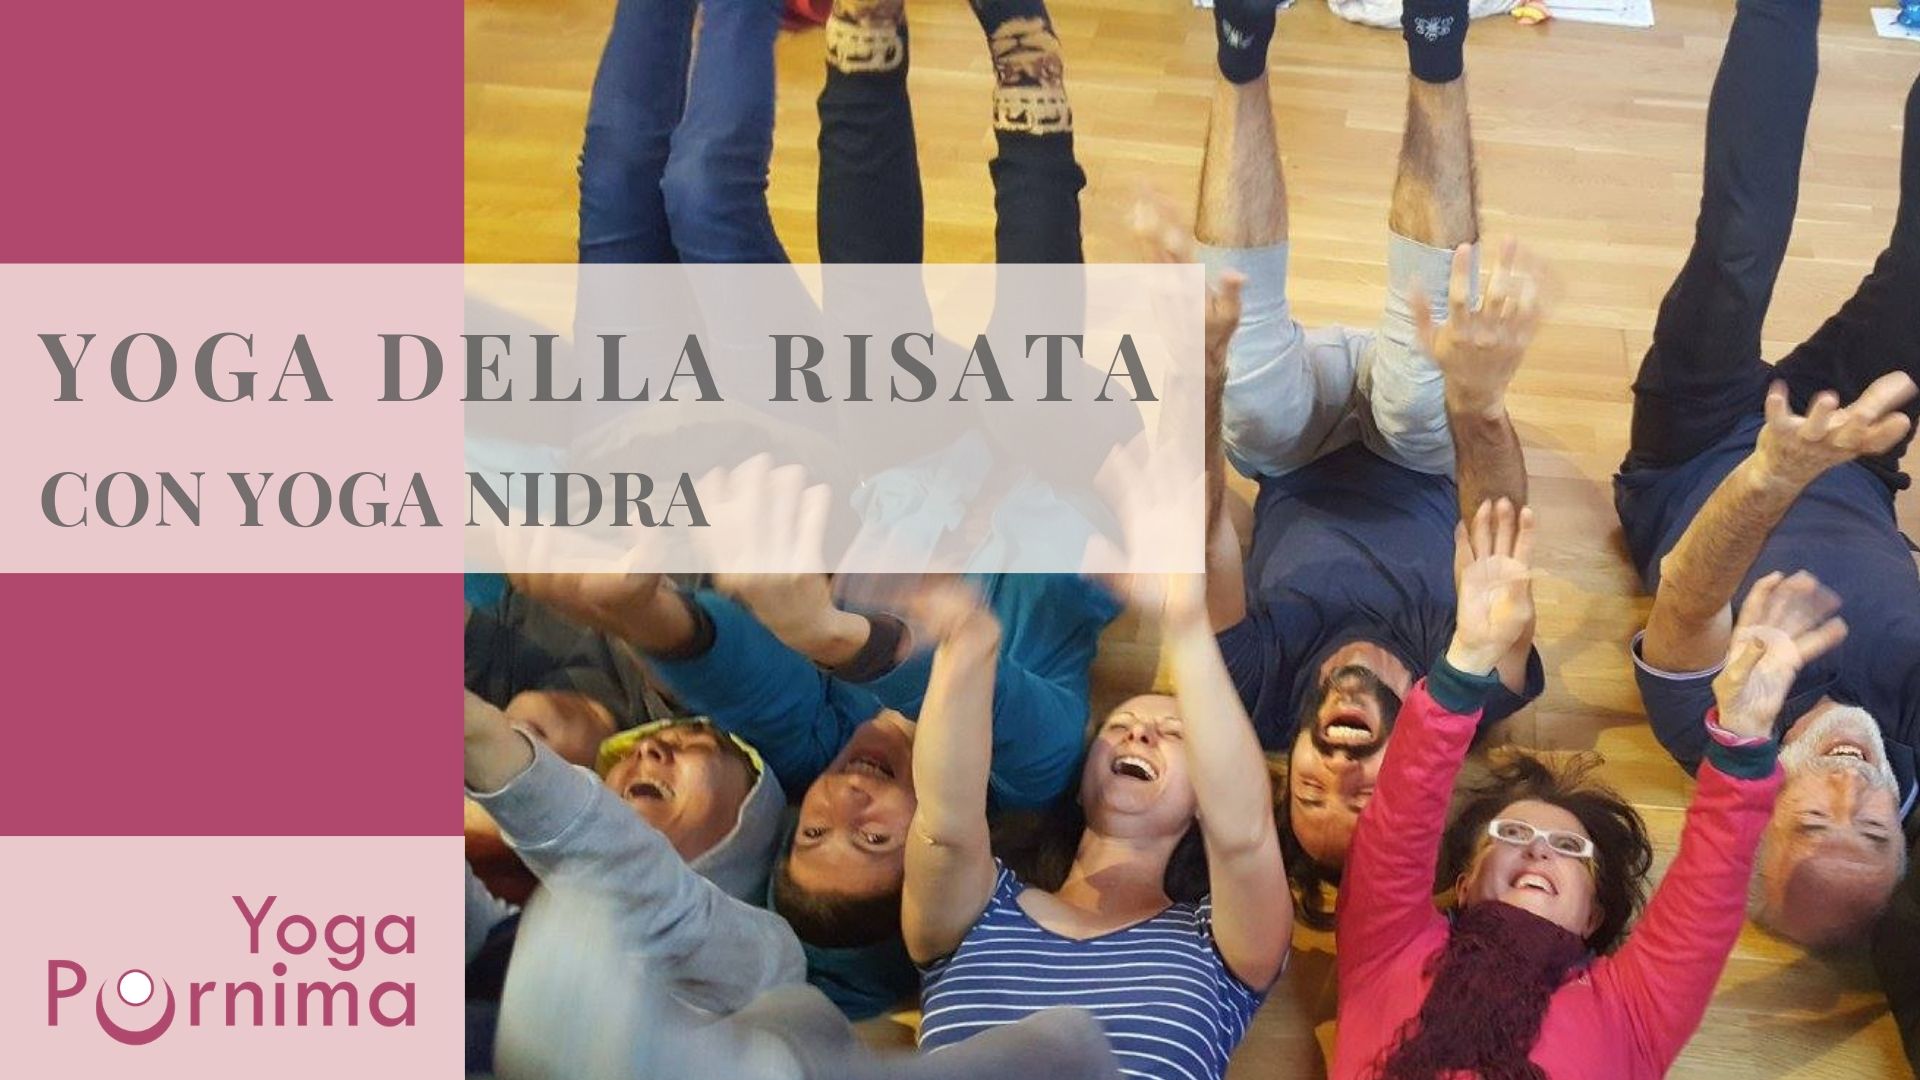 Giovedì 13 giugno: Yoga della Risata con Yoga Nidra